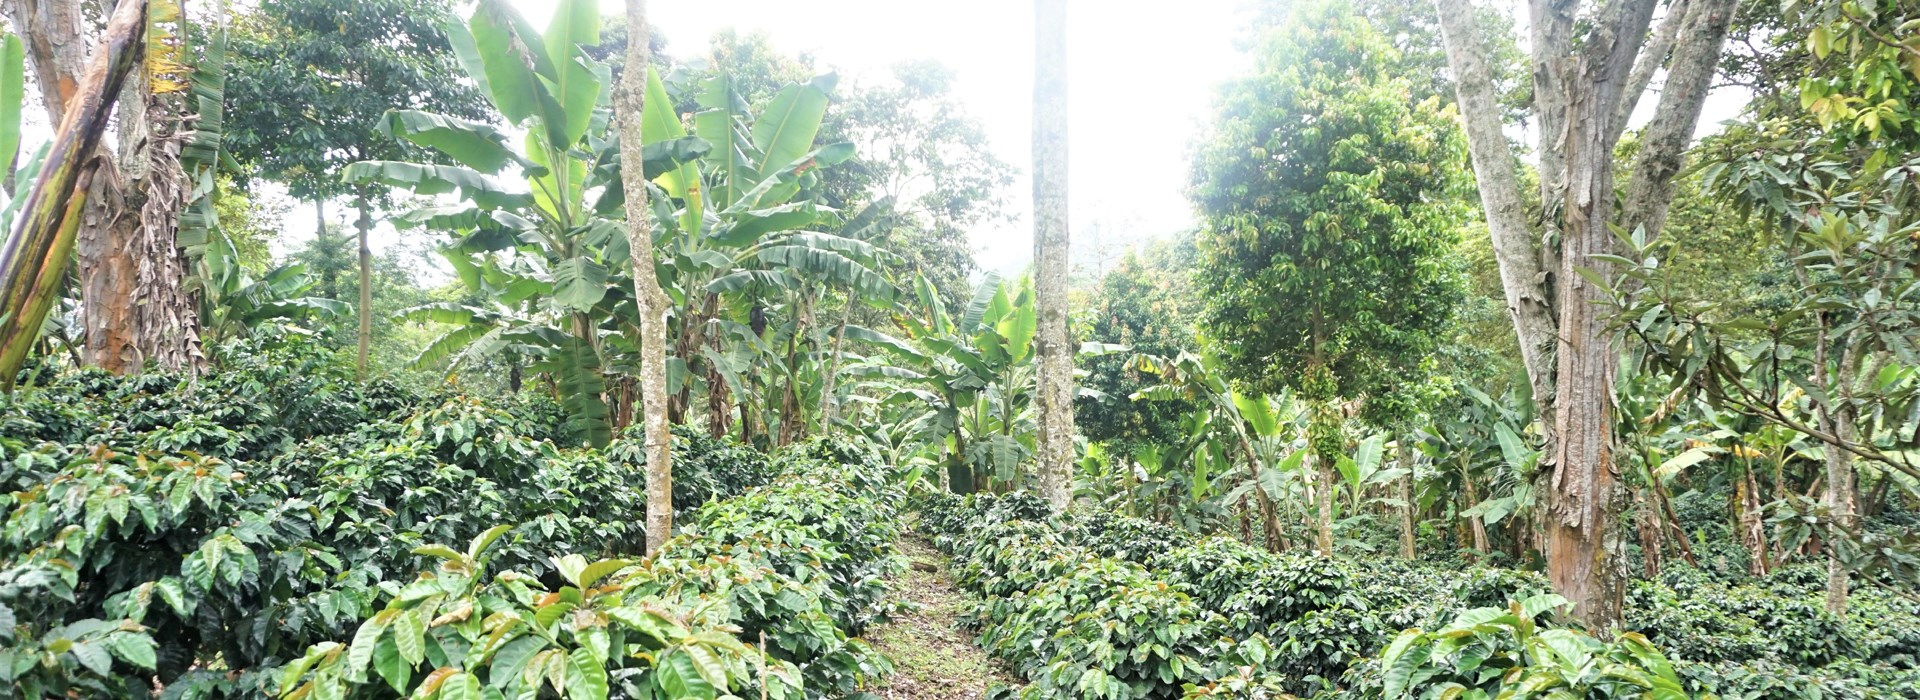 Visiter La région du café - Colombie